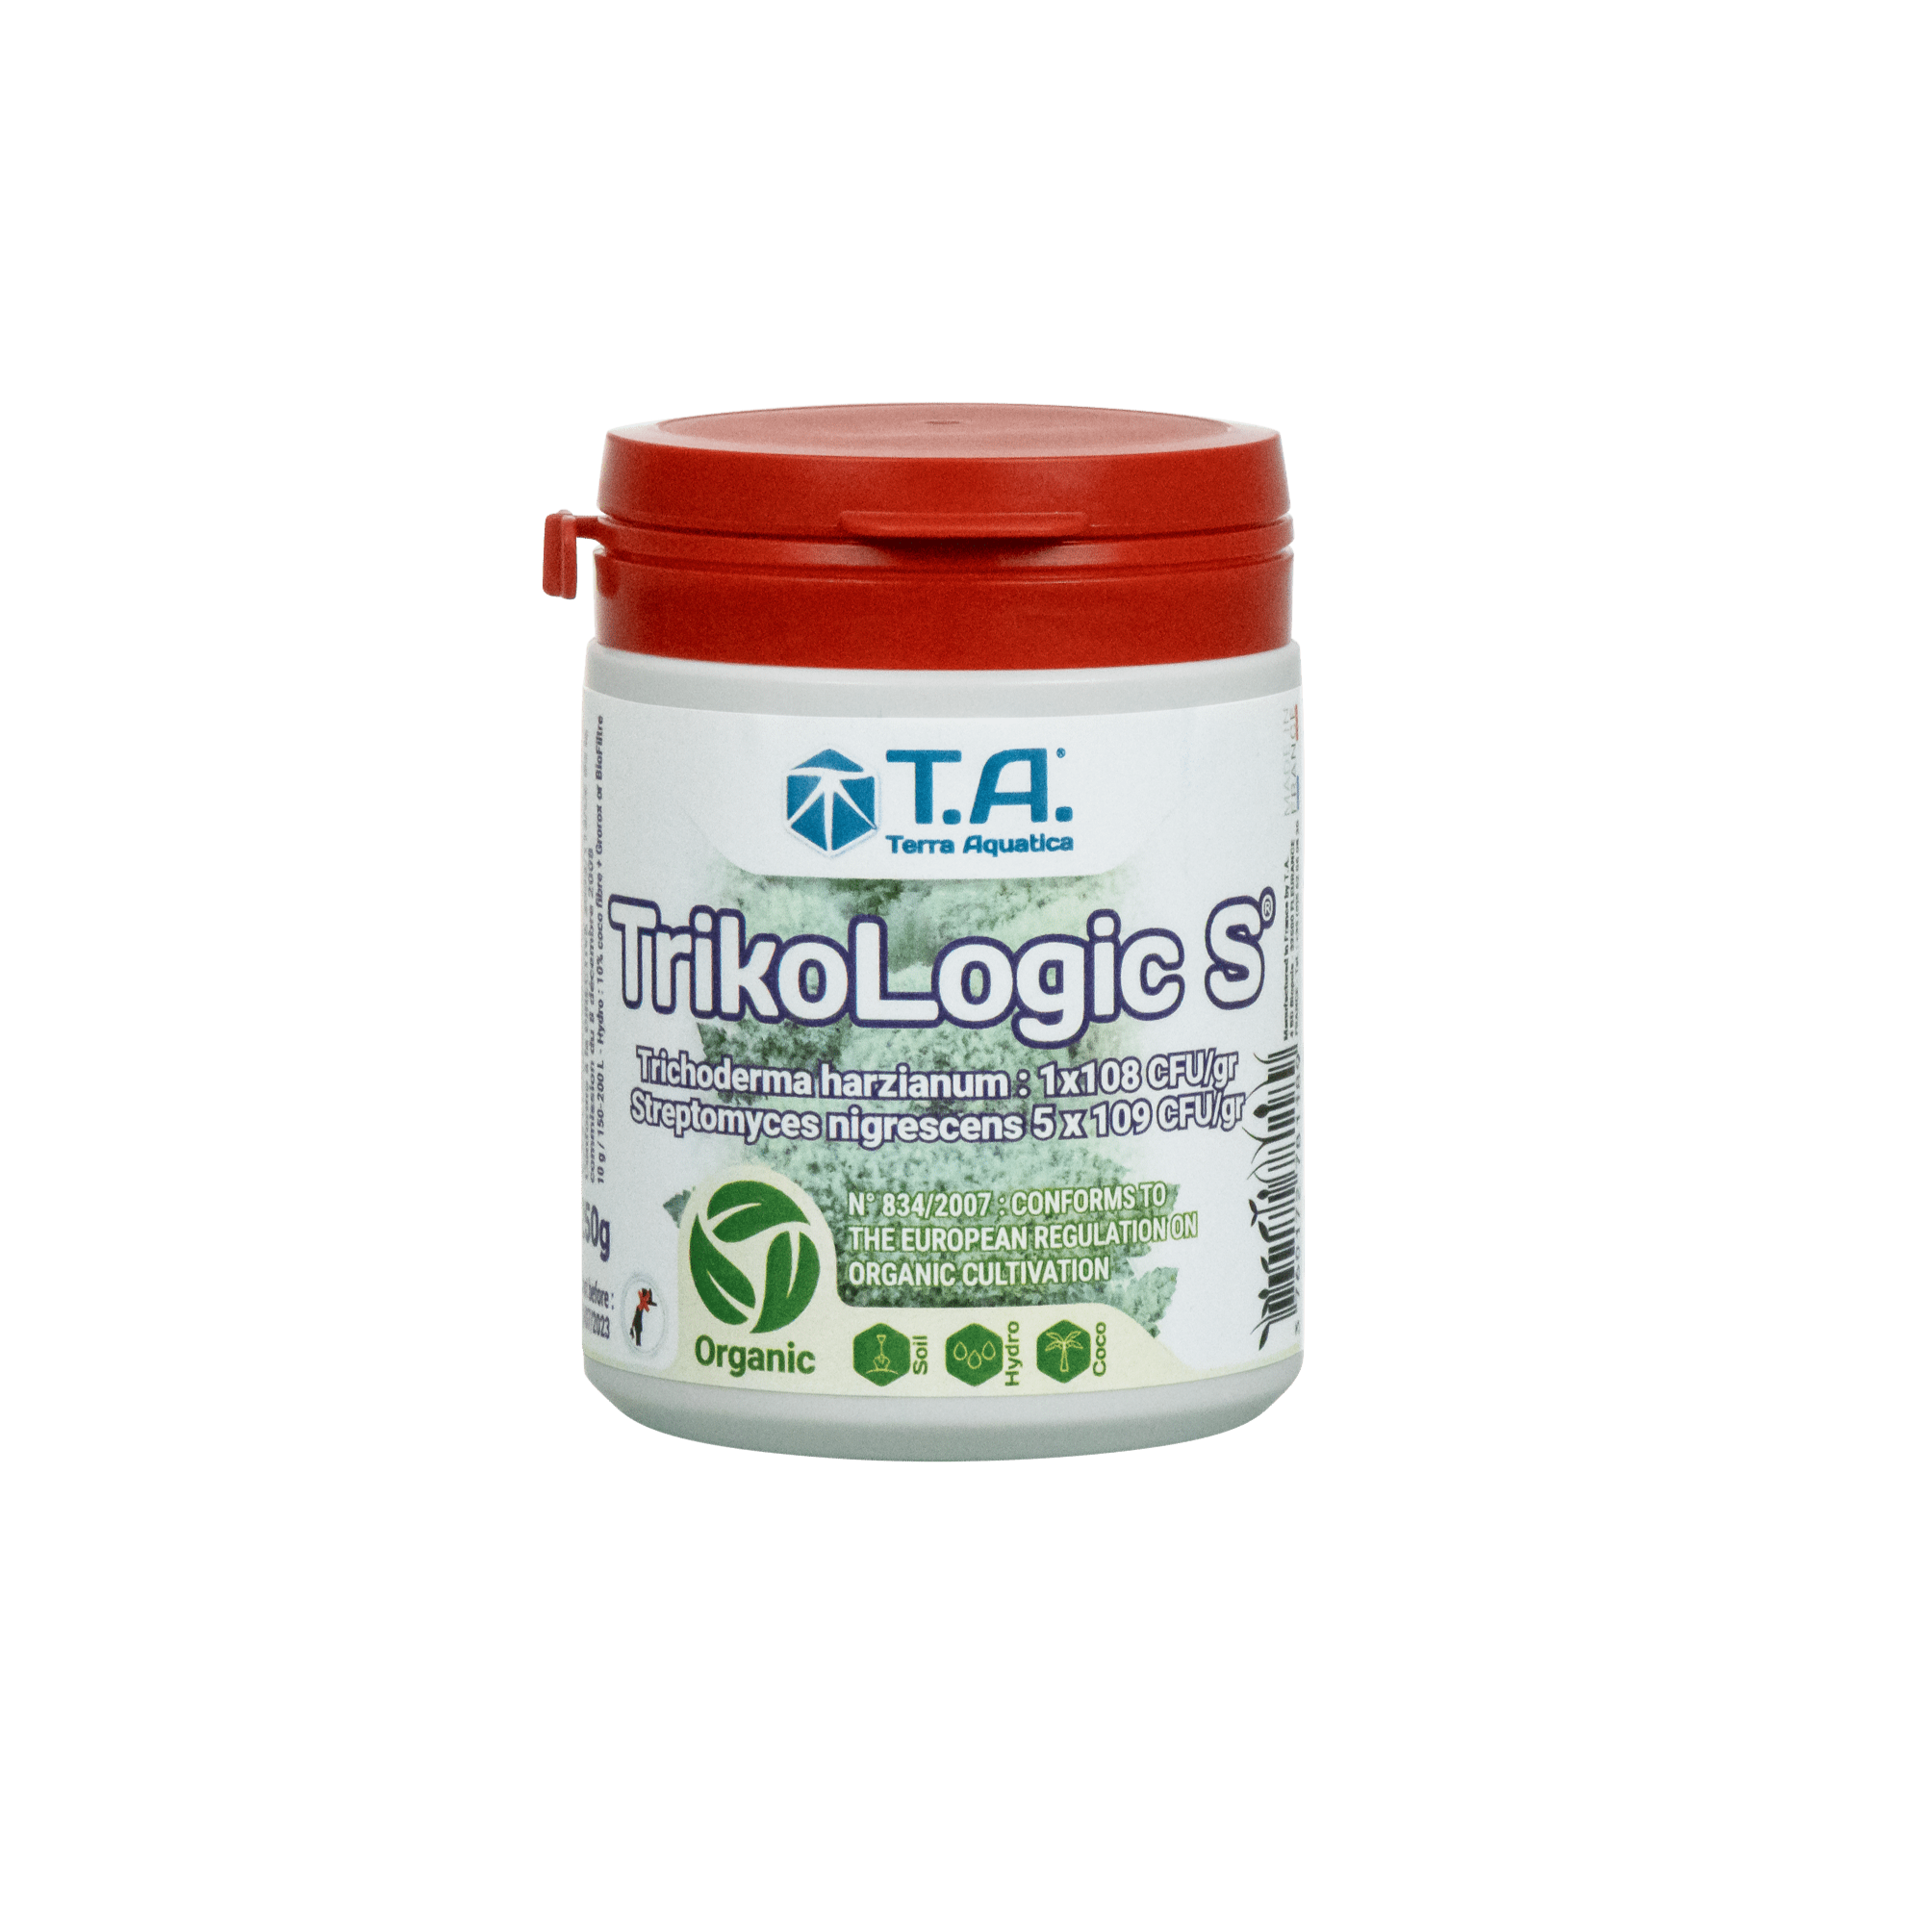 Nutrients 50G Terra Aquatica TrikoLogic S